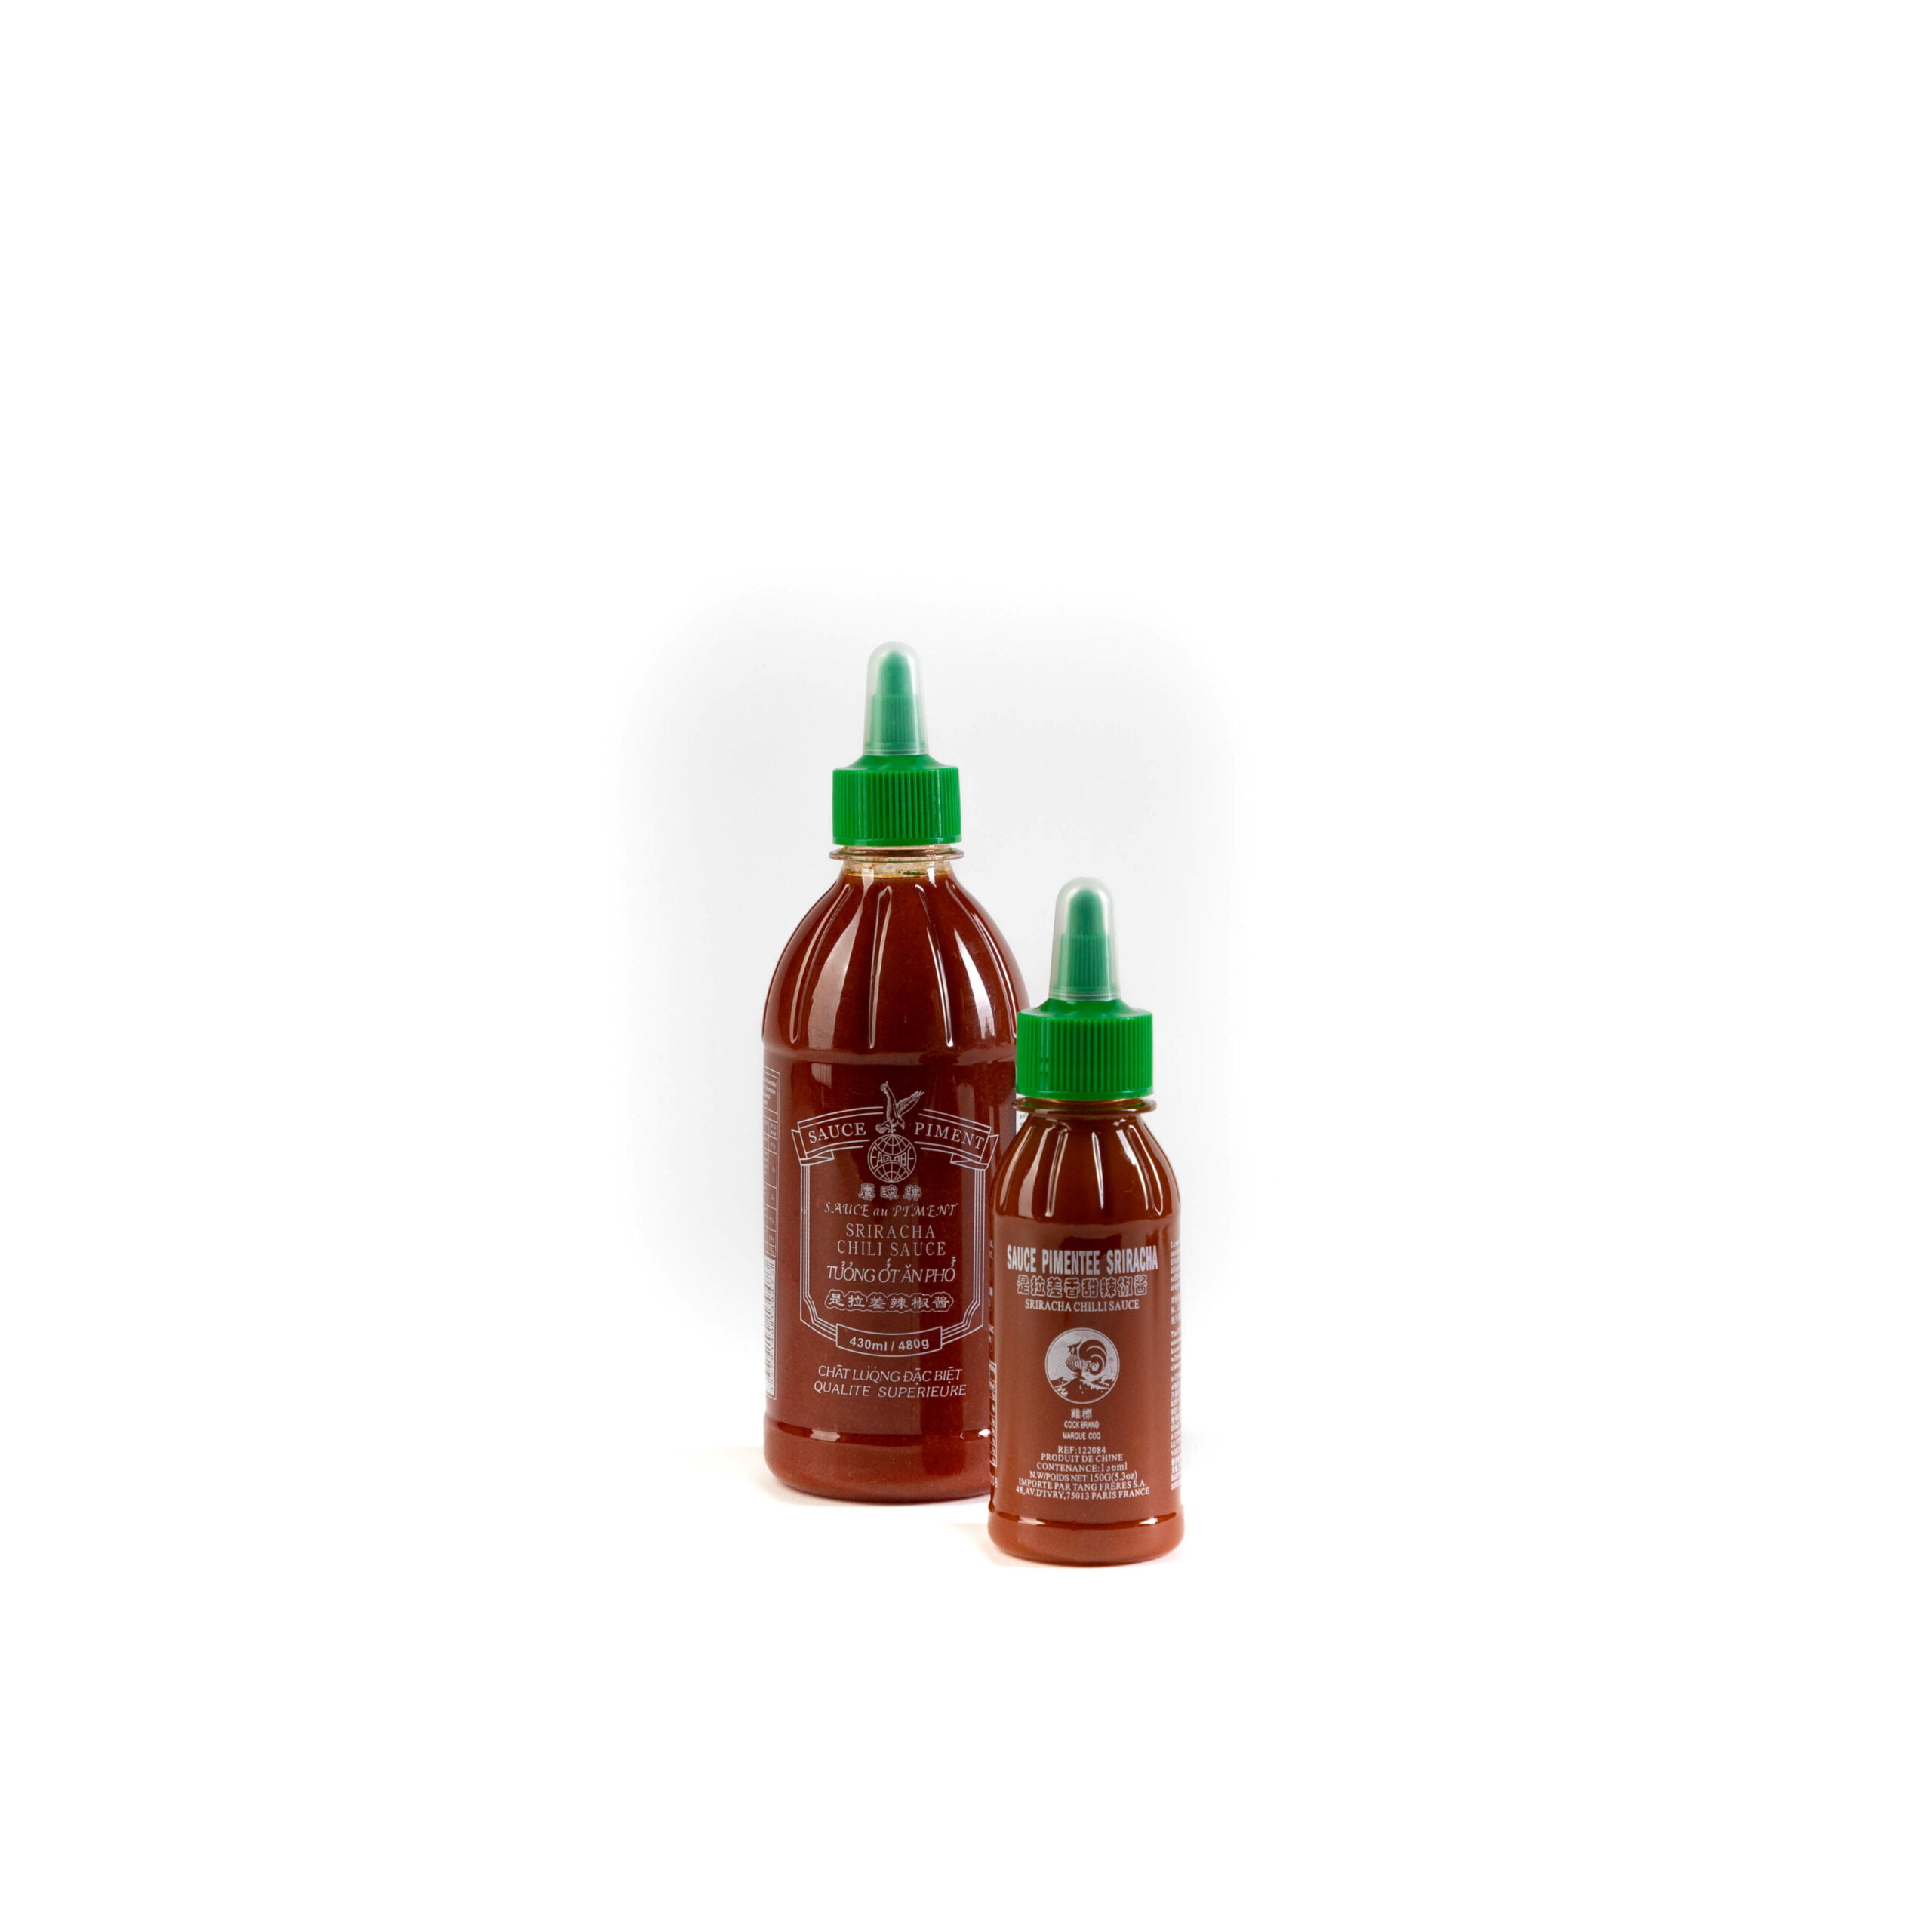 Sriracha Chili Sauce (730g-680ml) - Little Asia